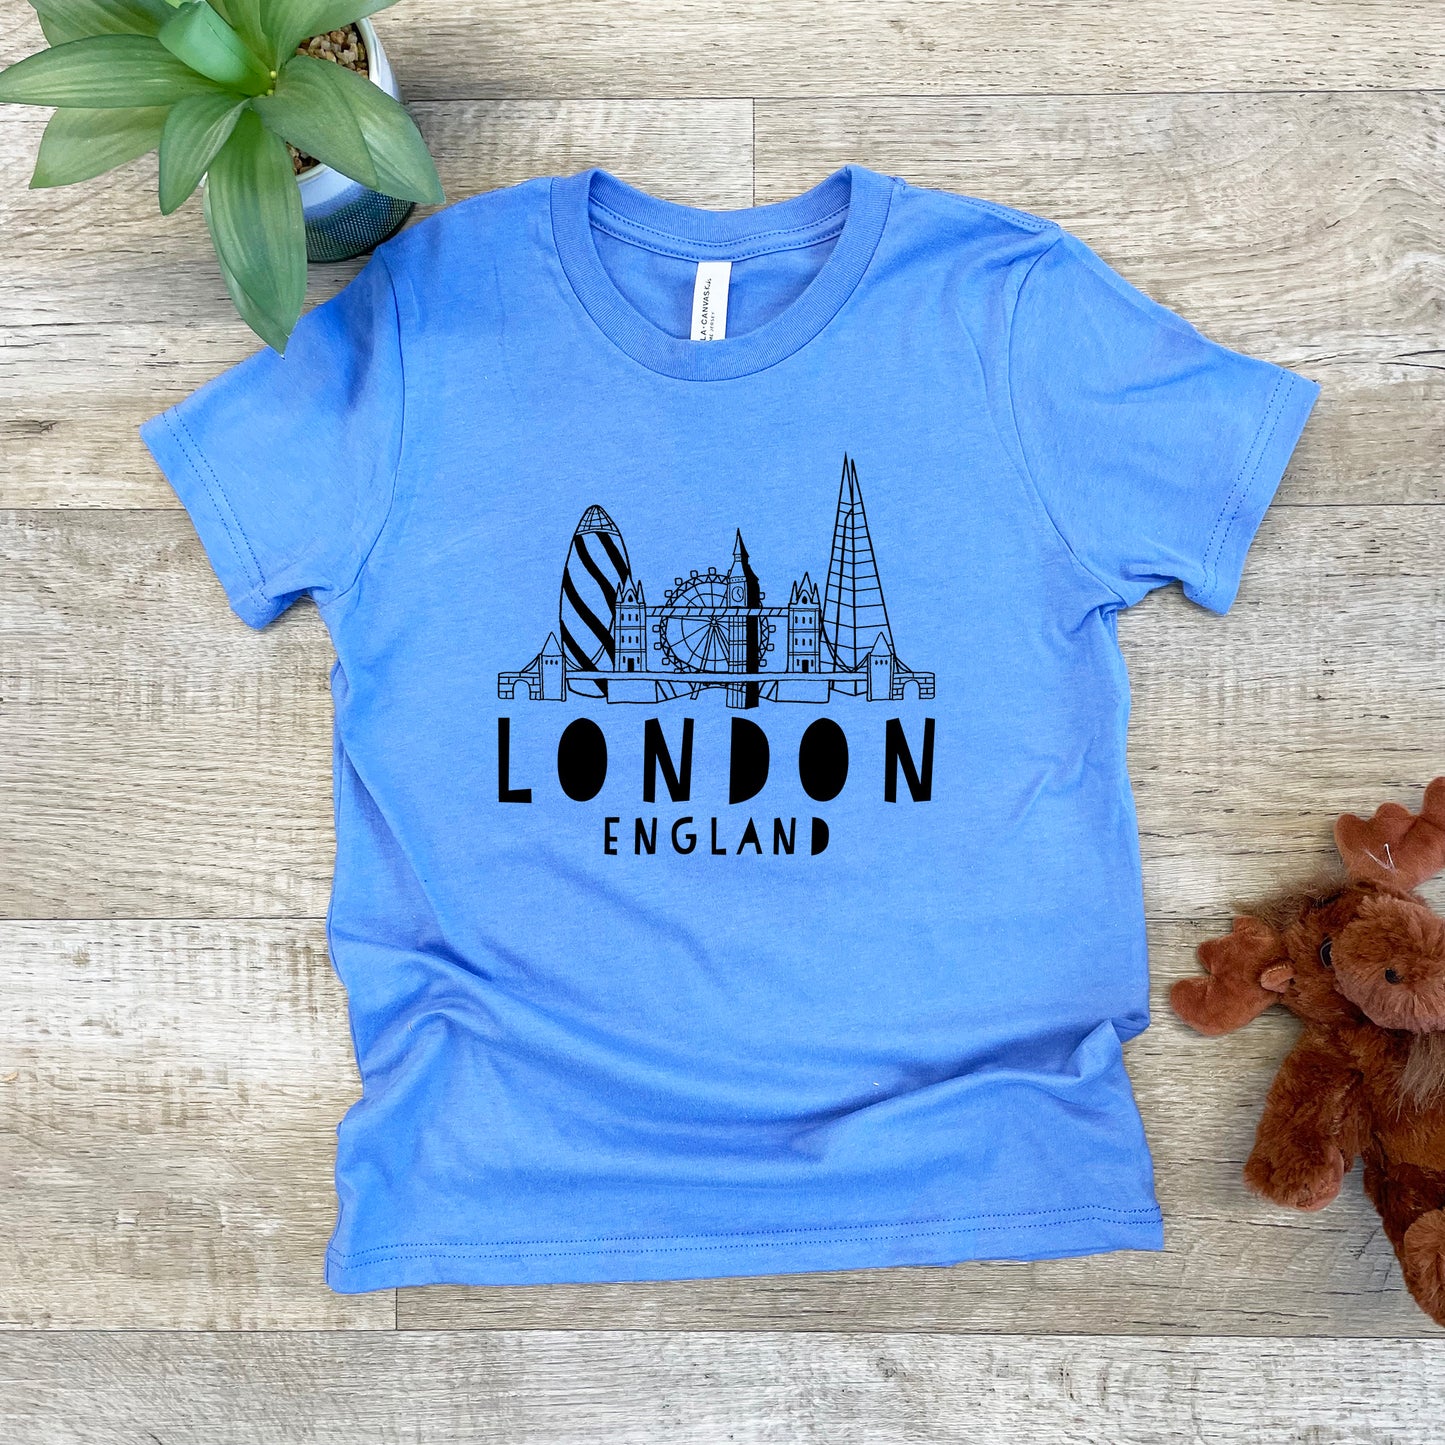 London Skyline - Kid's Tee - Columbia Blue or Lavender